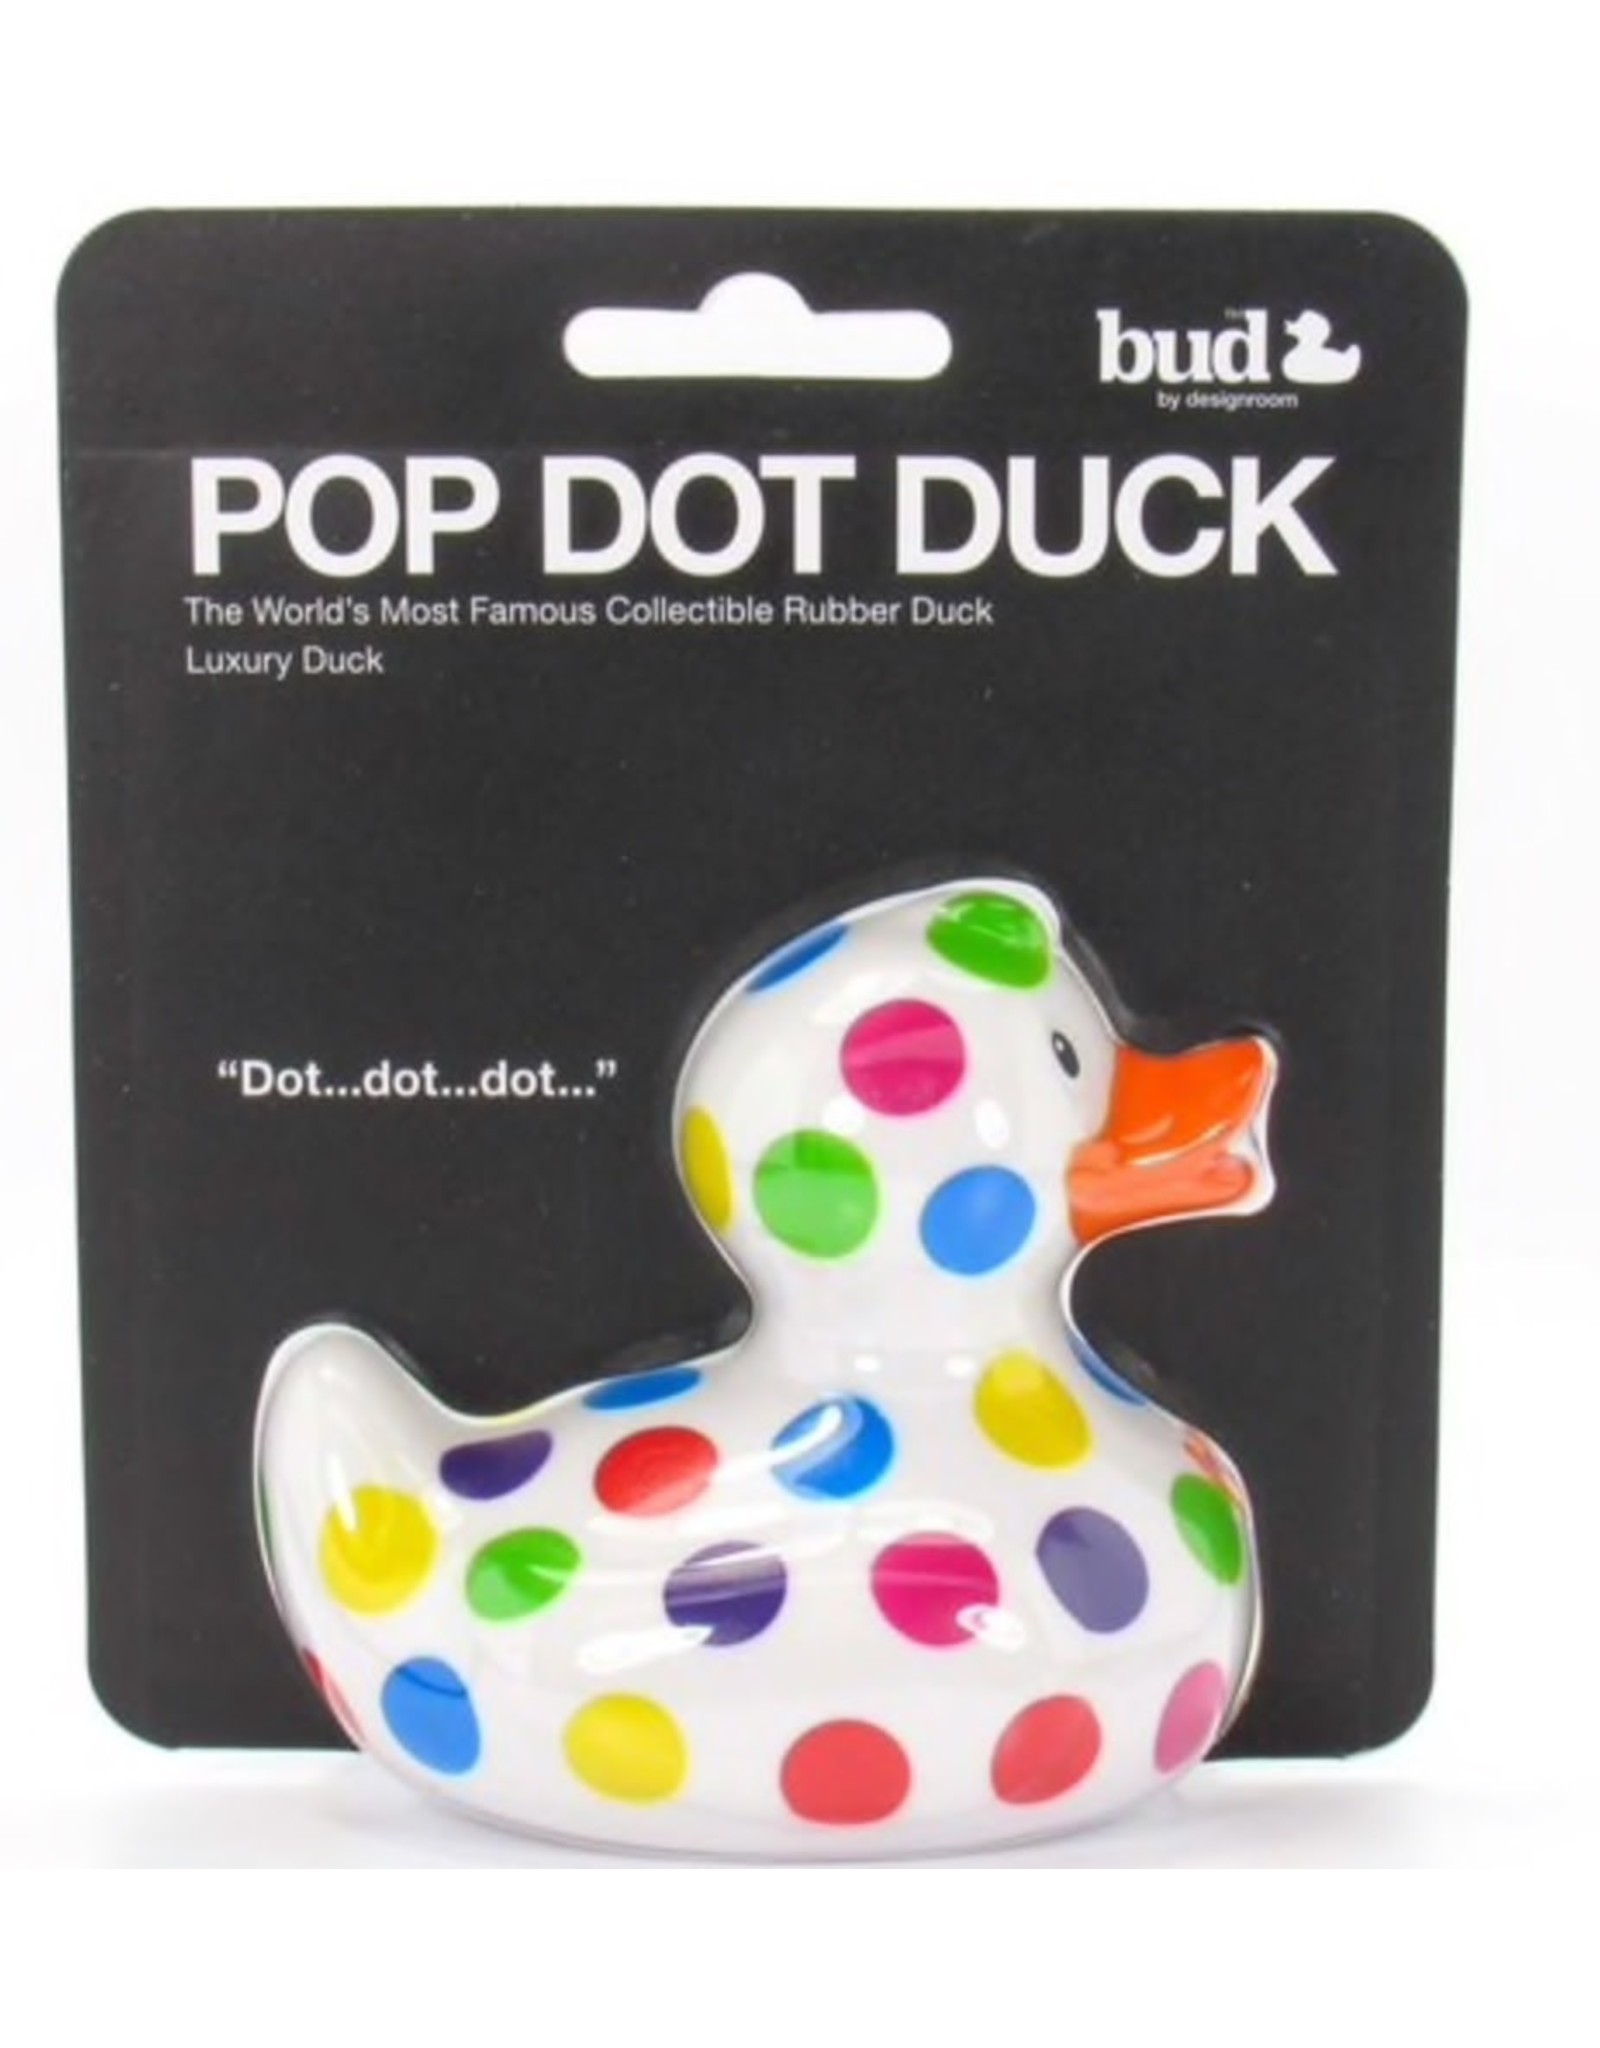 Le canard Pop Dot